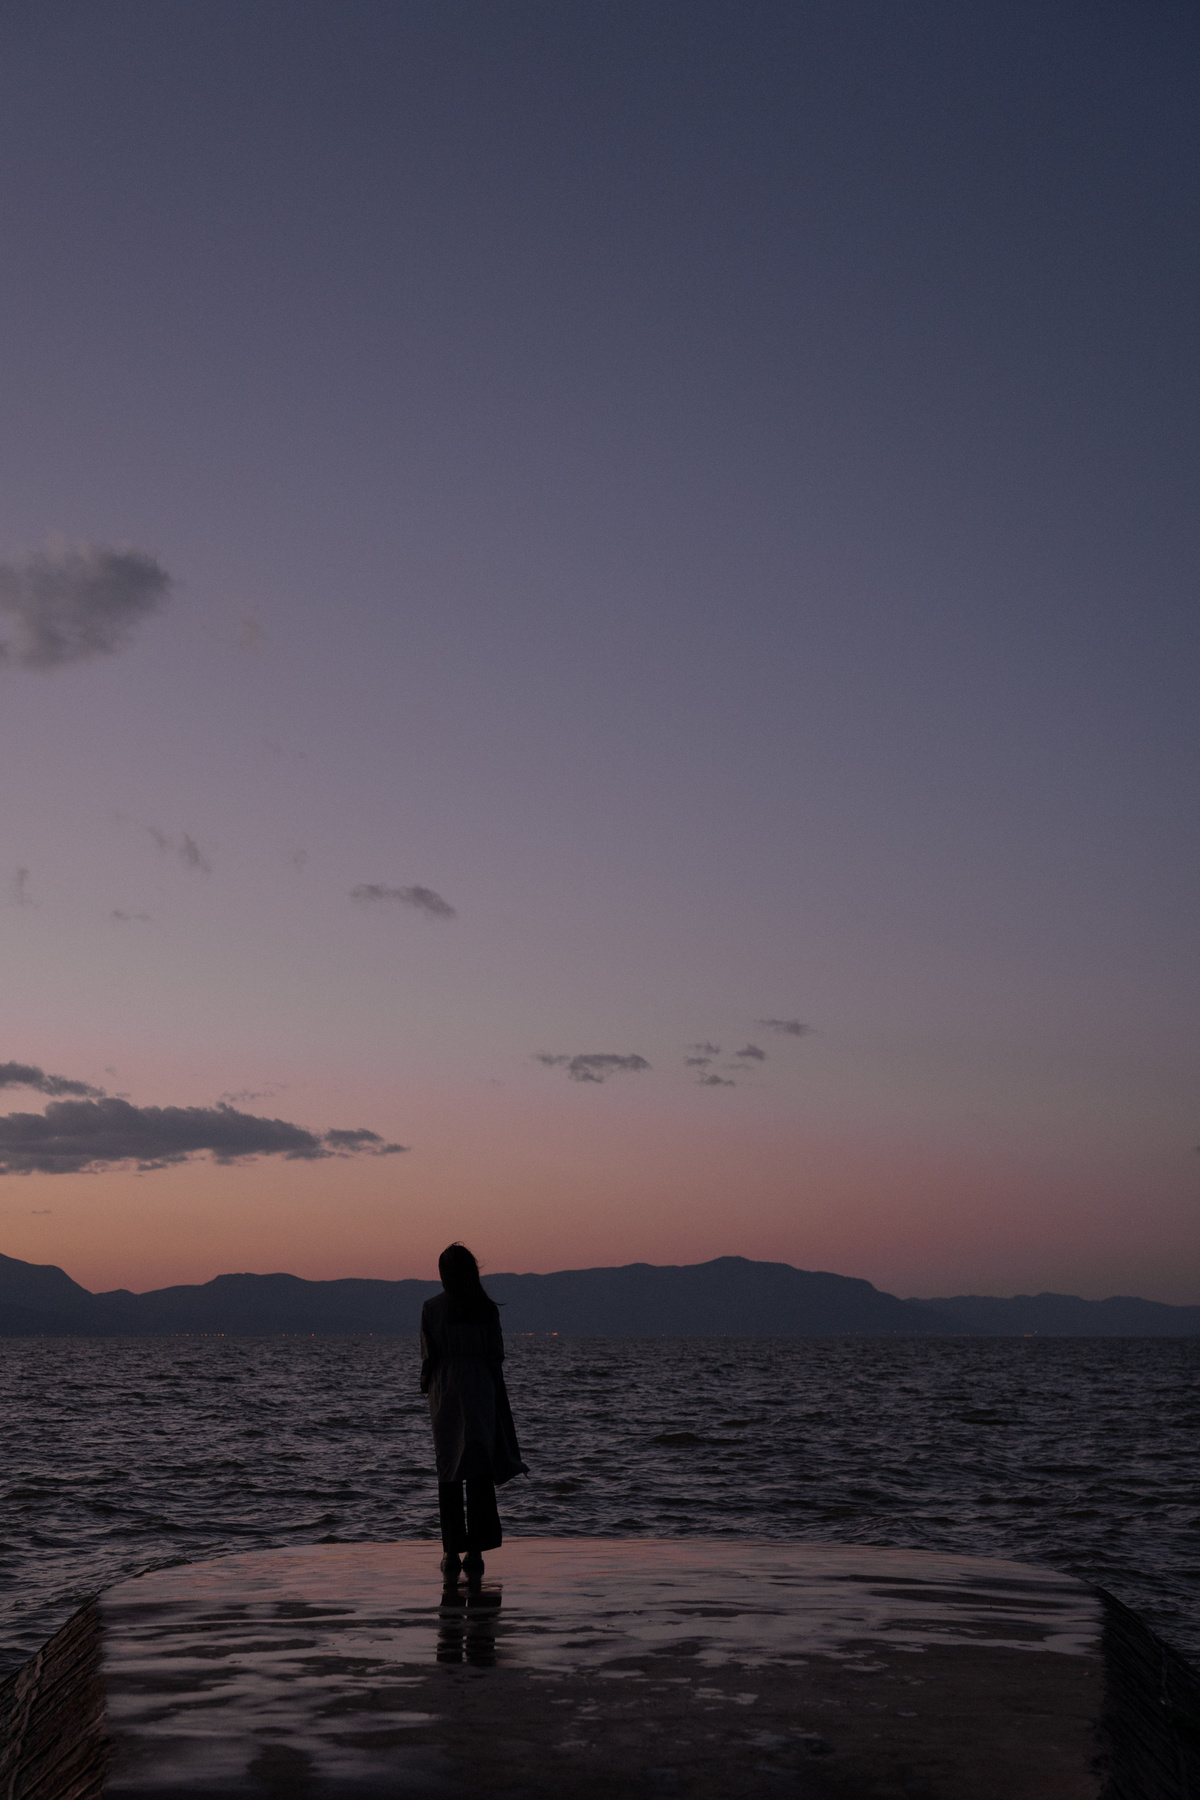 黄昏时分 一位妇女站在码头上眺望大海 落日余晖笼罩着一片水域